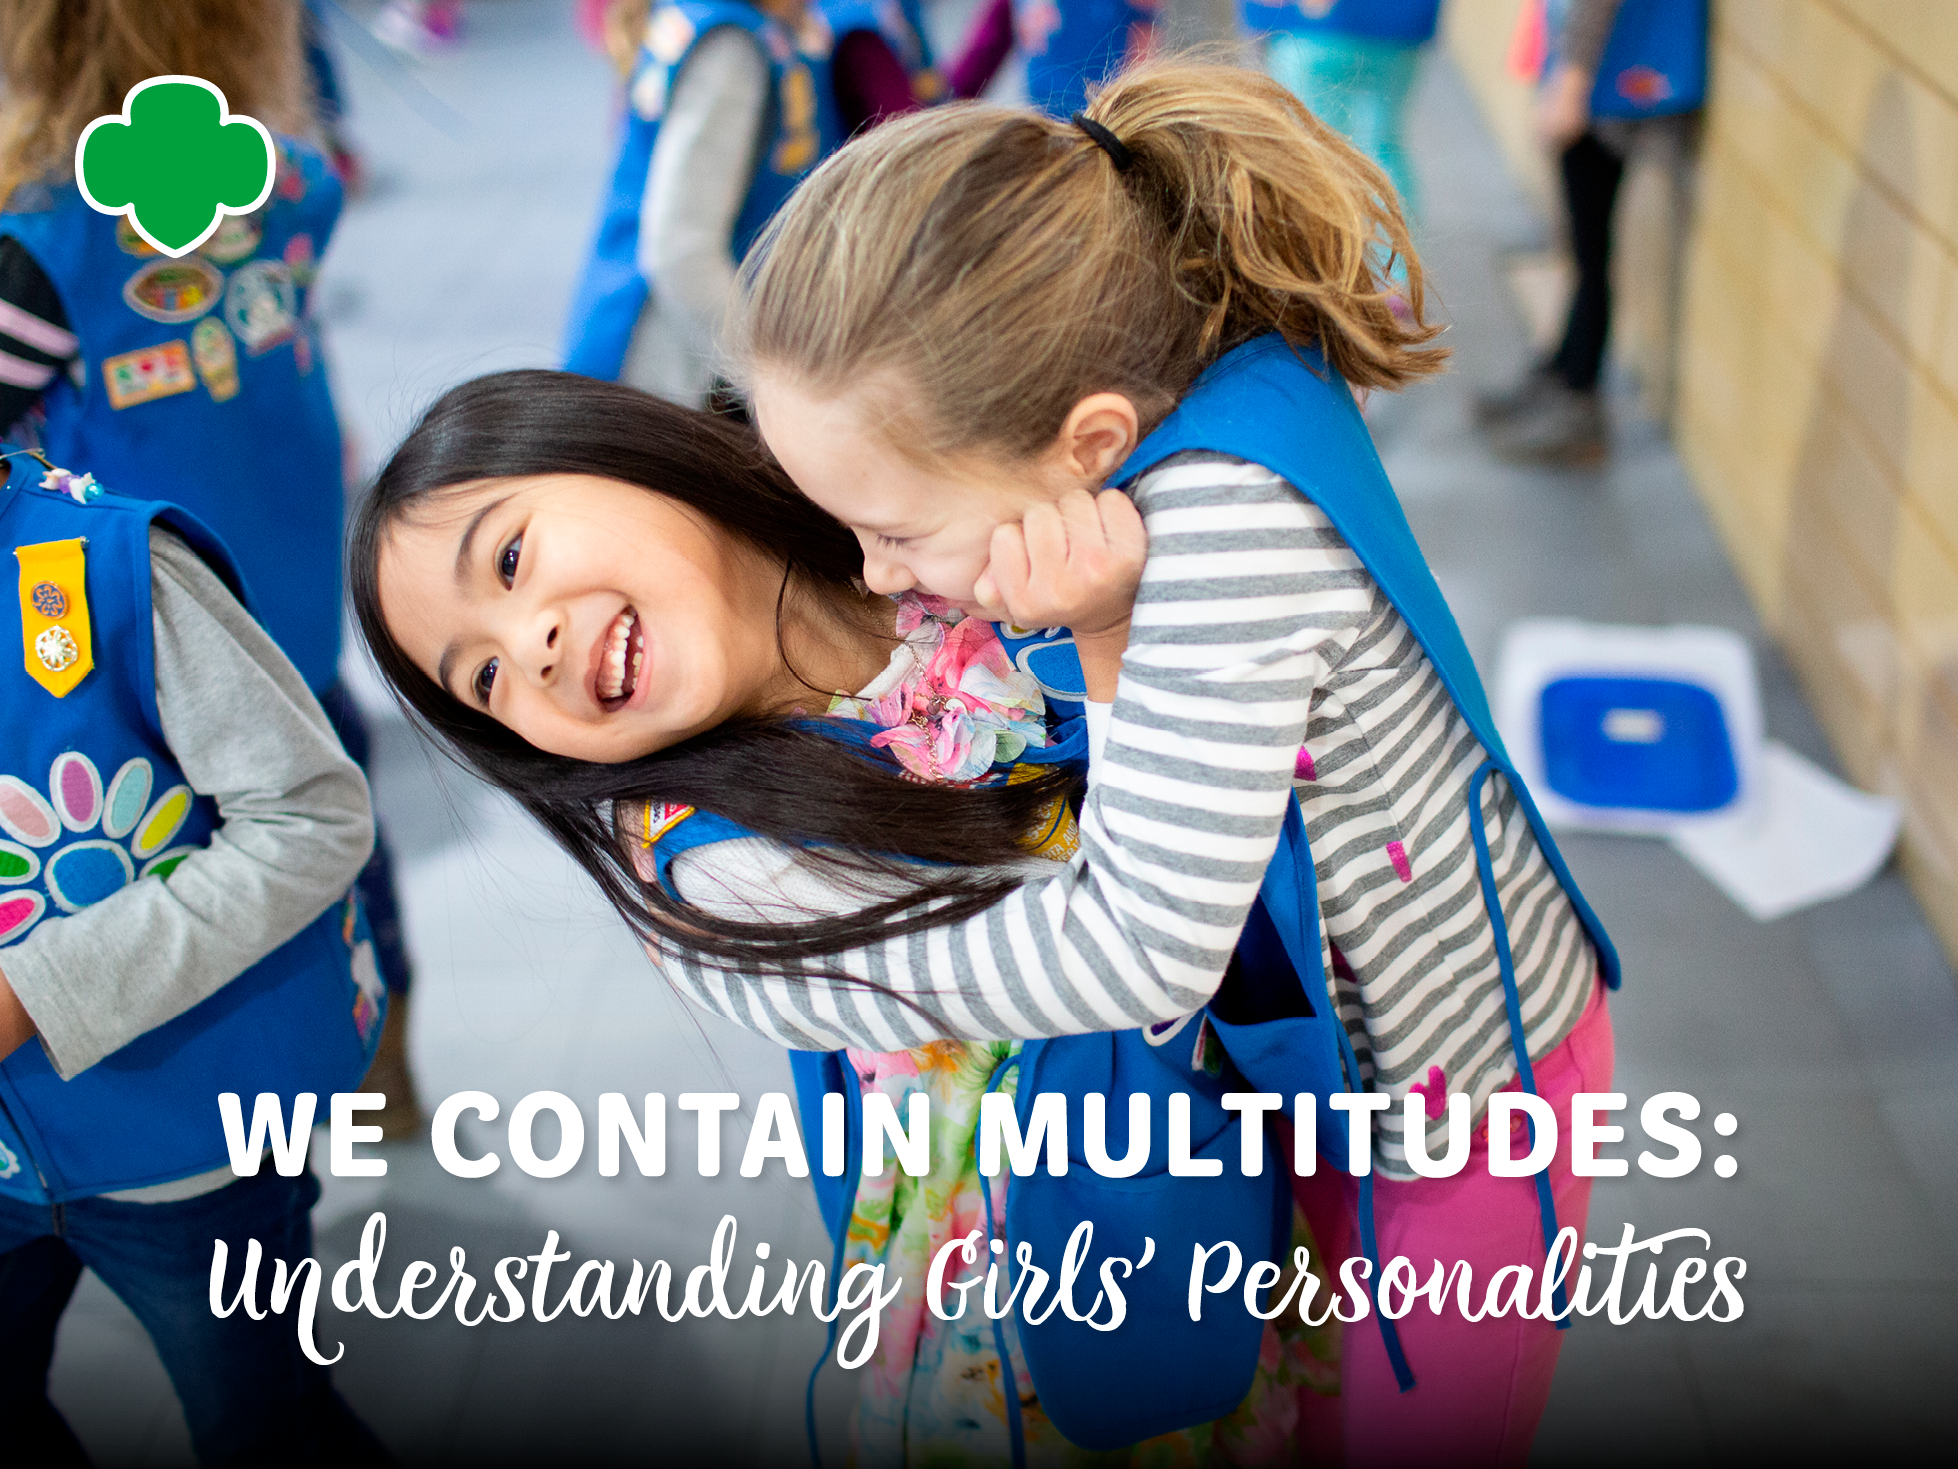 We Contain Multitudes: Understanding Girls' Personalities